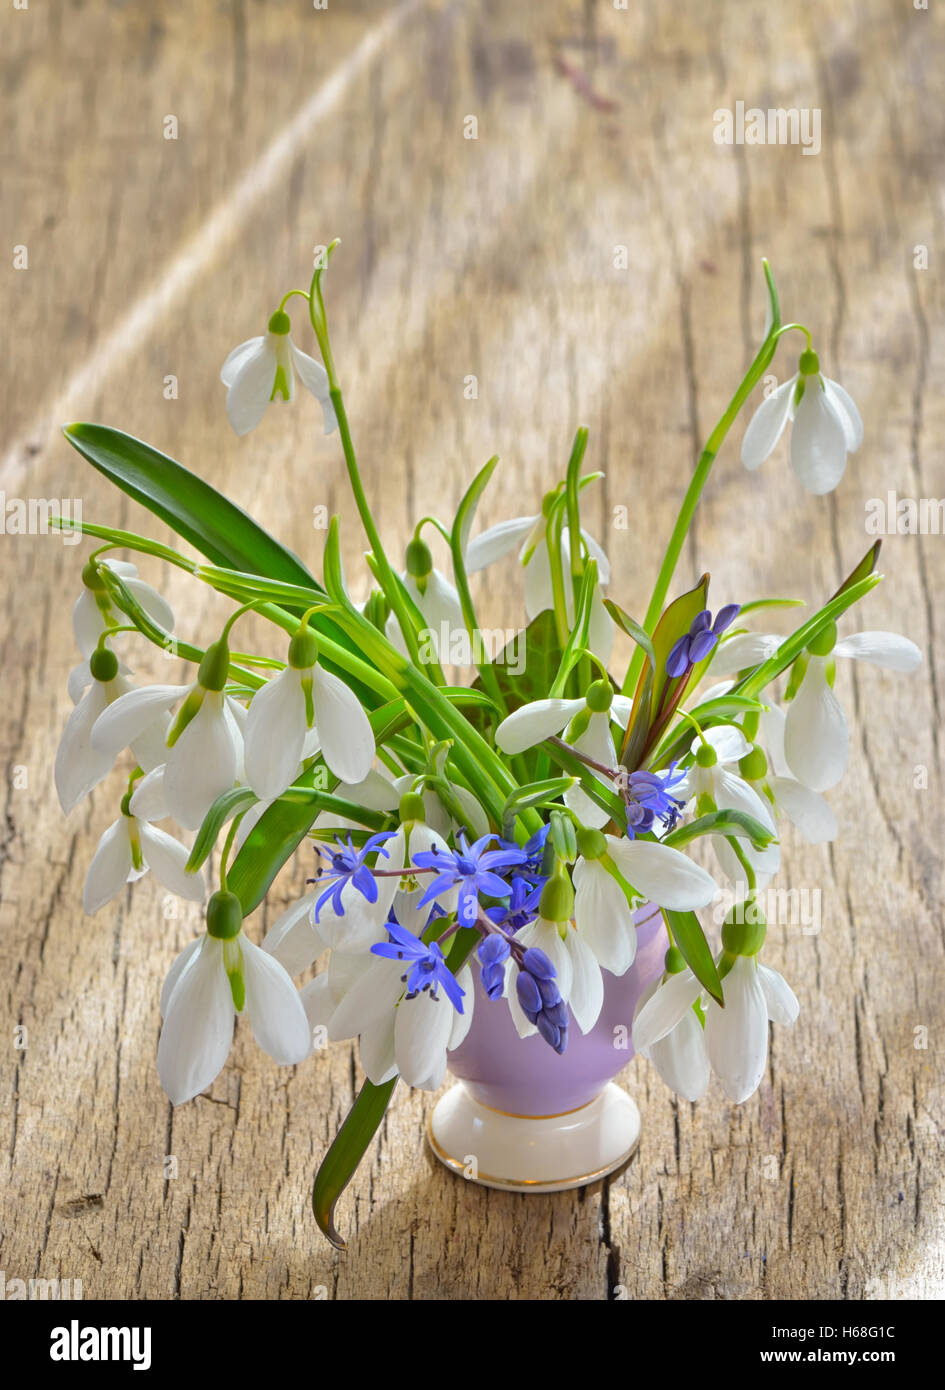 Schöner Blumenstrauß von Schneeglöckchen in Vase auf Holztisch  Stockfotografie - Alamy